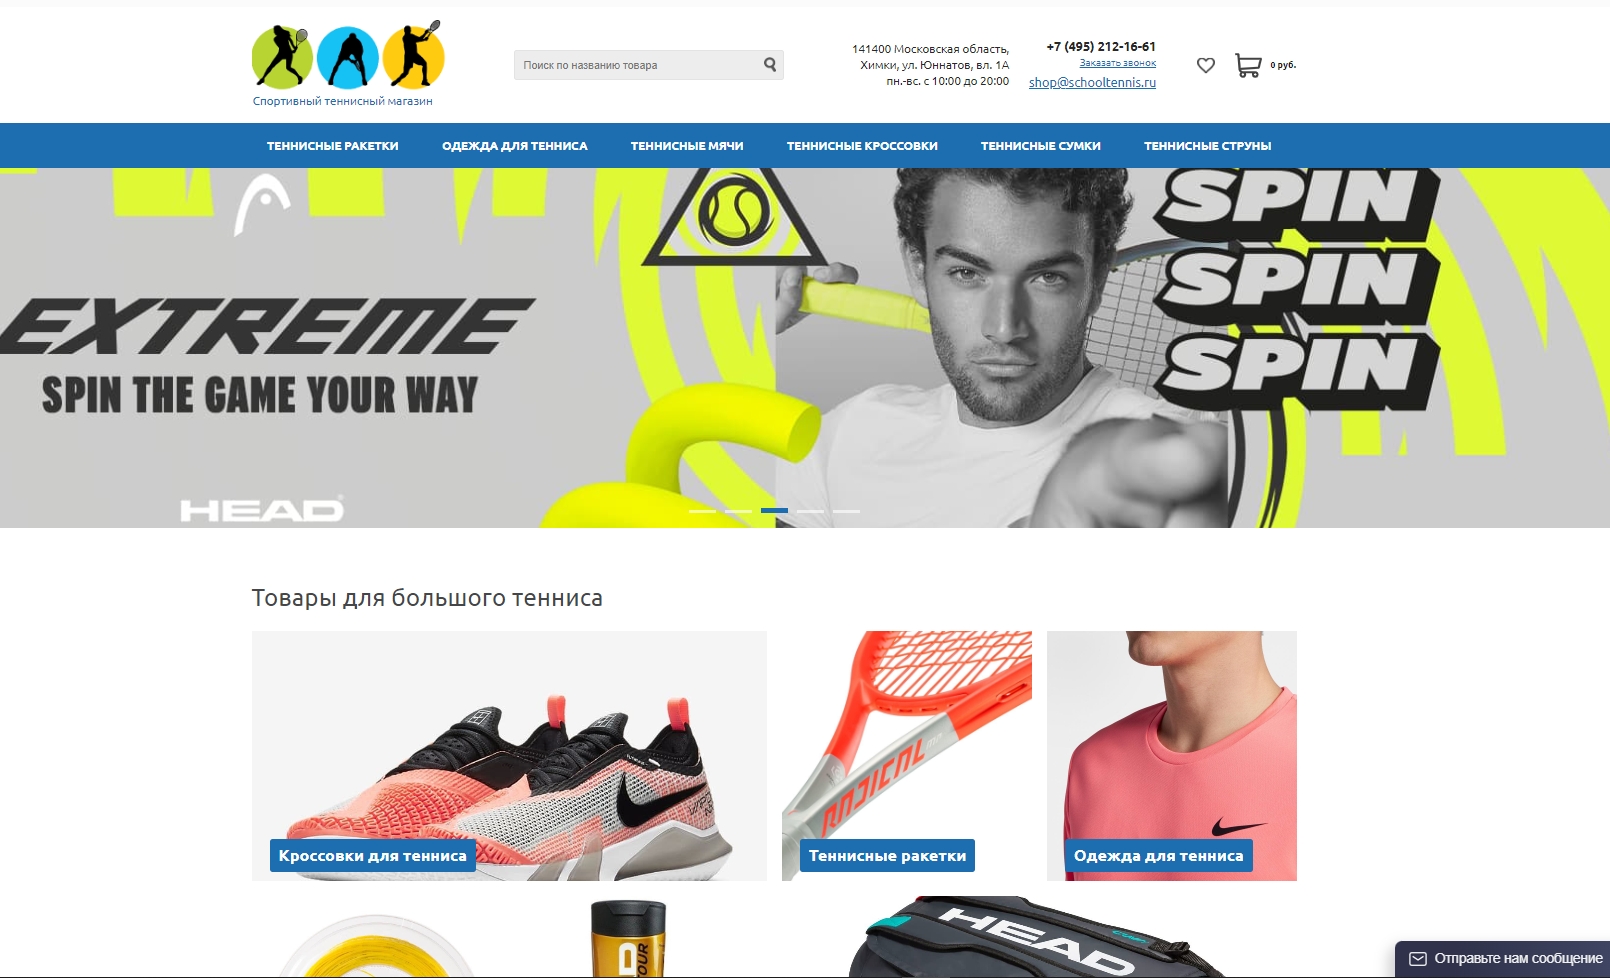 shop.schooltennis.ru | Теннисный магазин